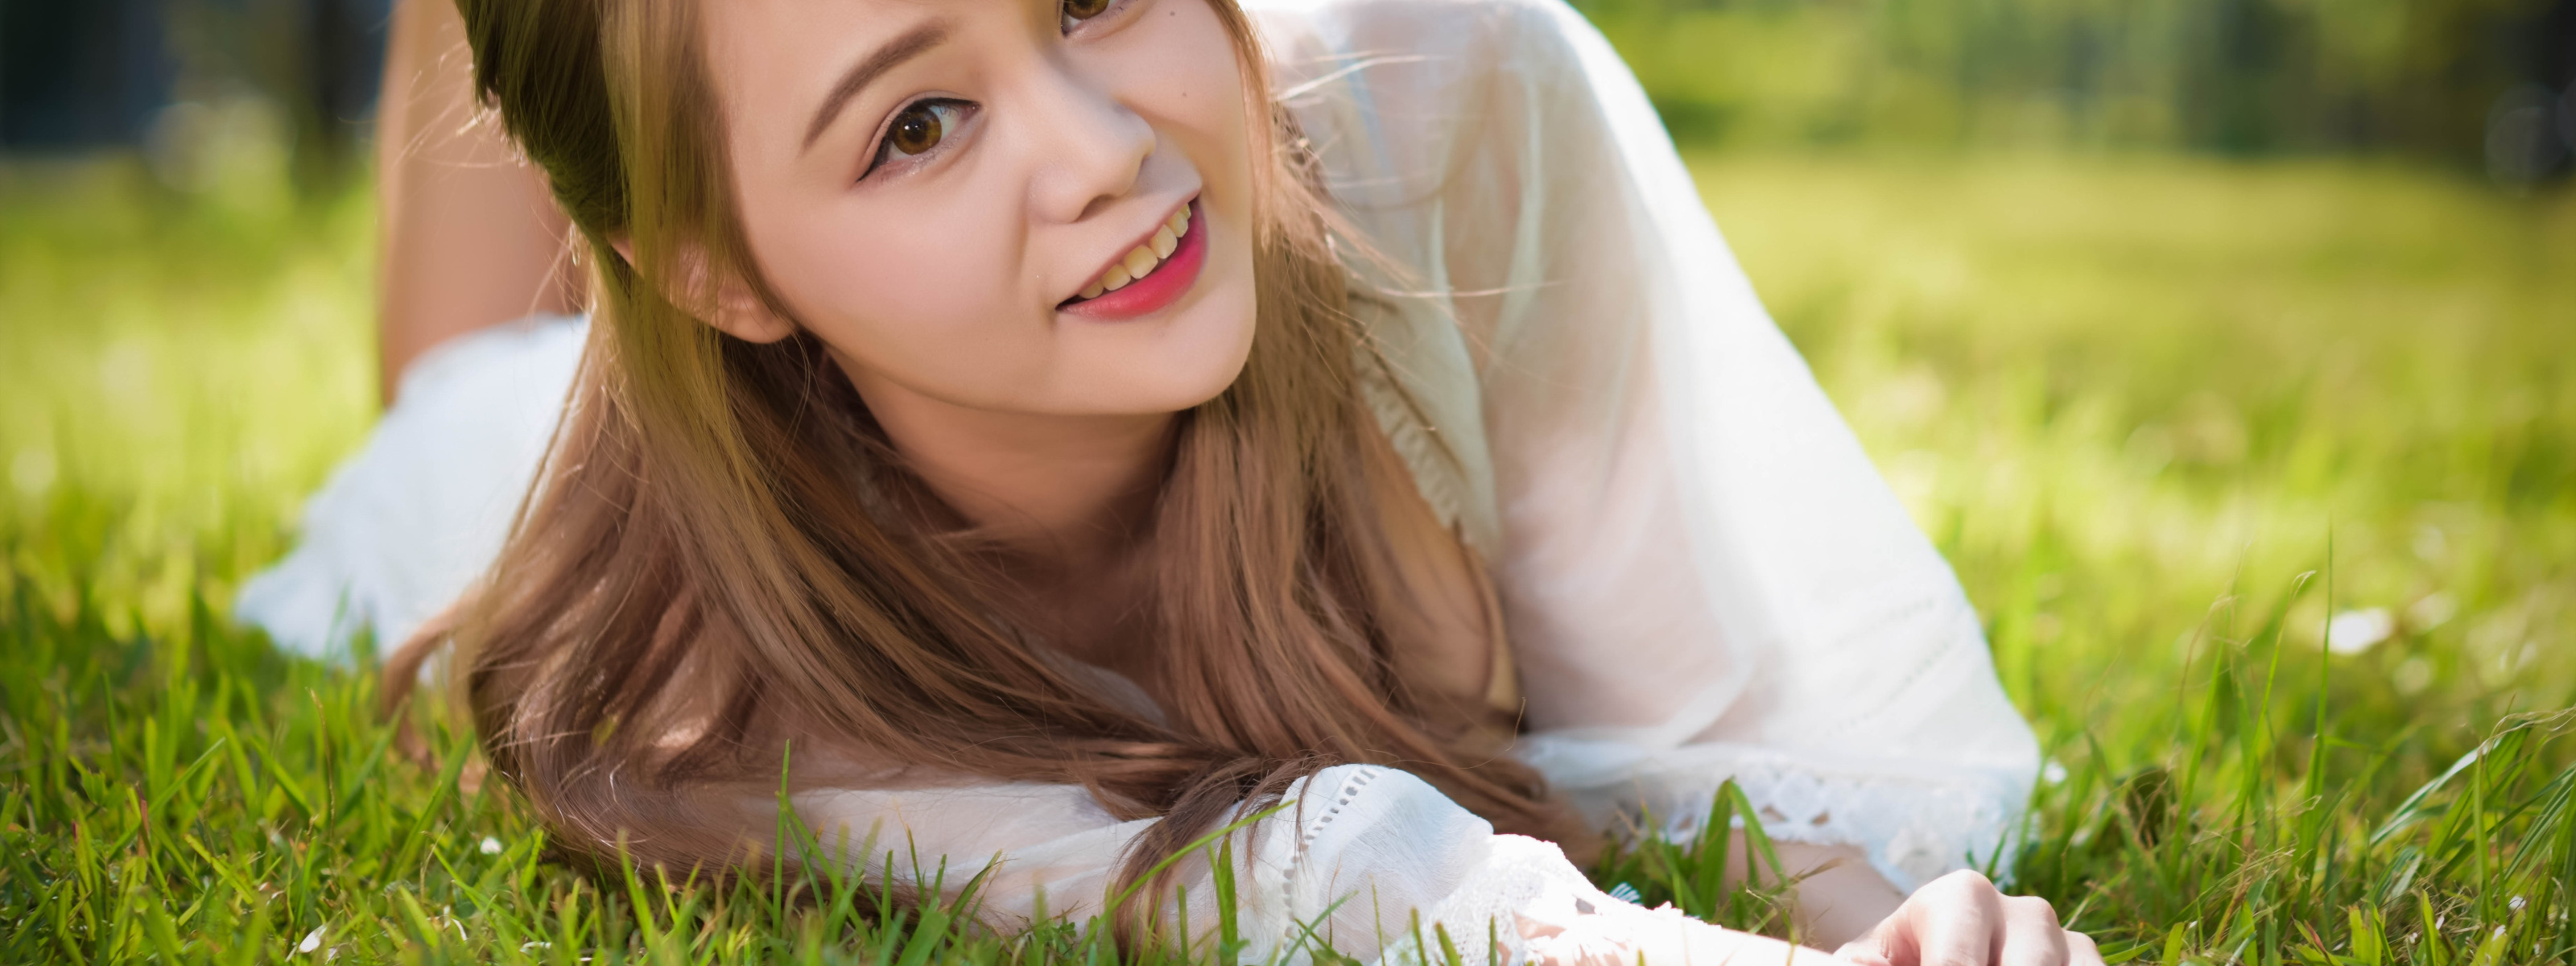 Девочка на траве улыбается. Нежная улыбка девочки подростка. На траве стильно. Девочка 10 лет в траве. Видео красивеньких